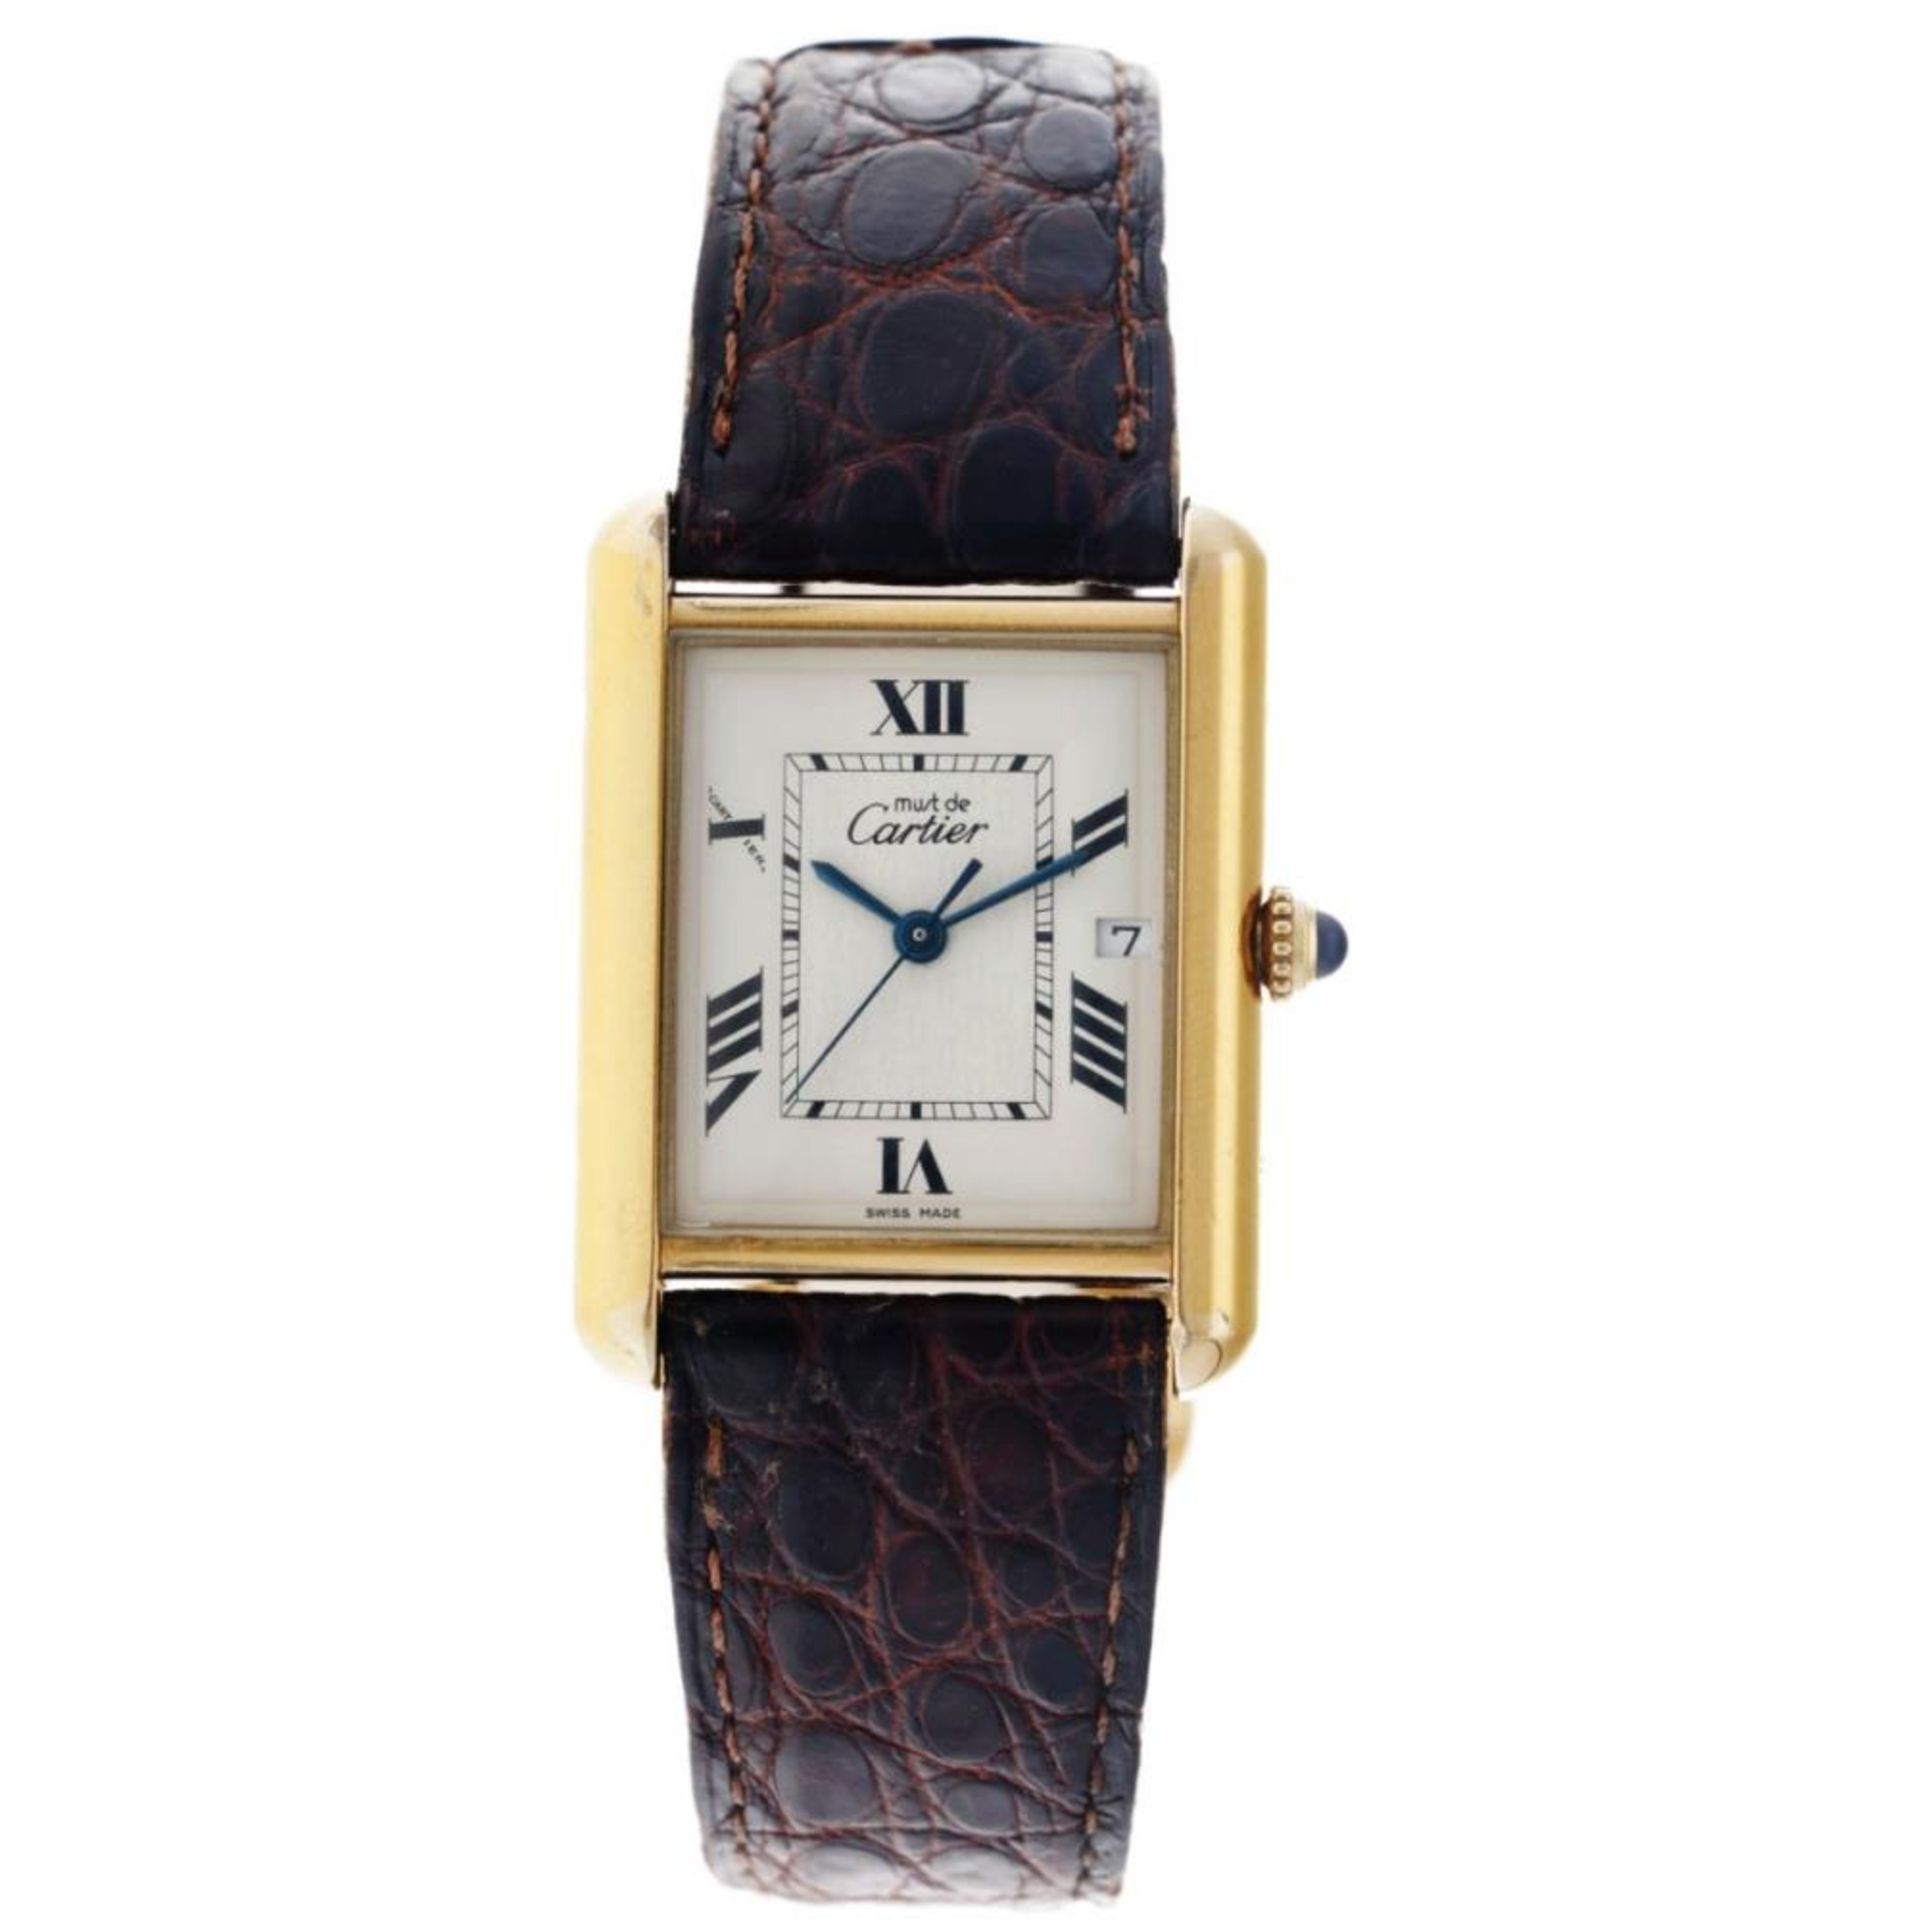 Cartier Tank Must 2413 - Men's watch - approx. 2000.